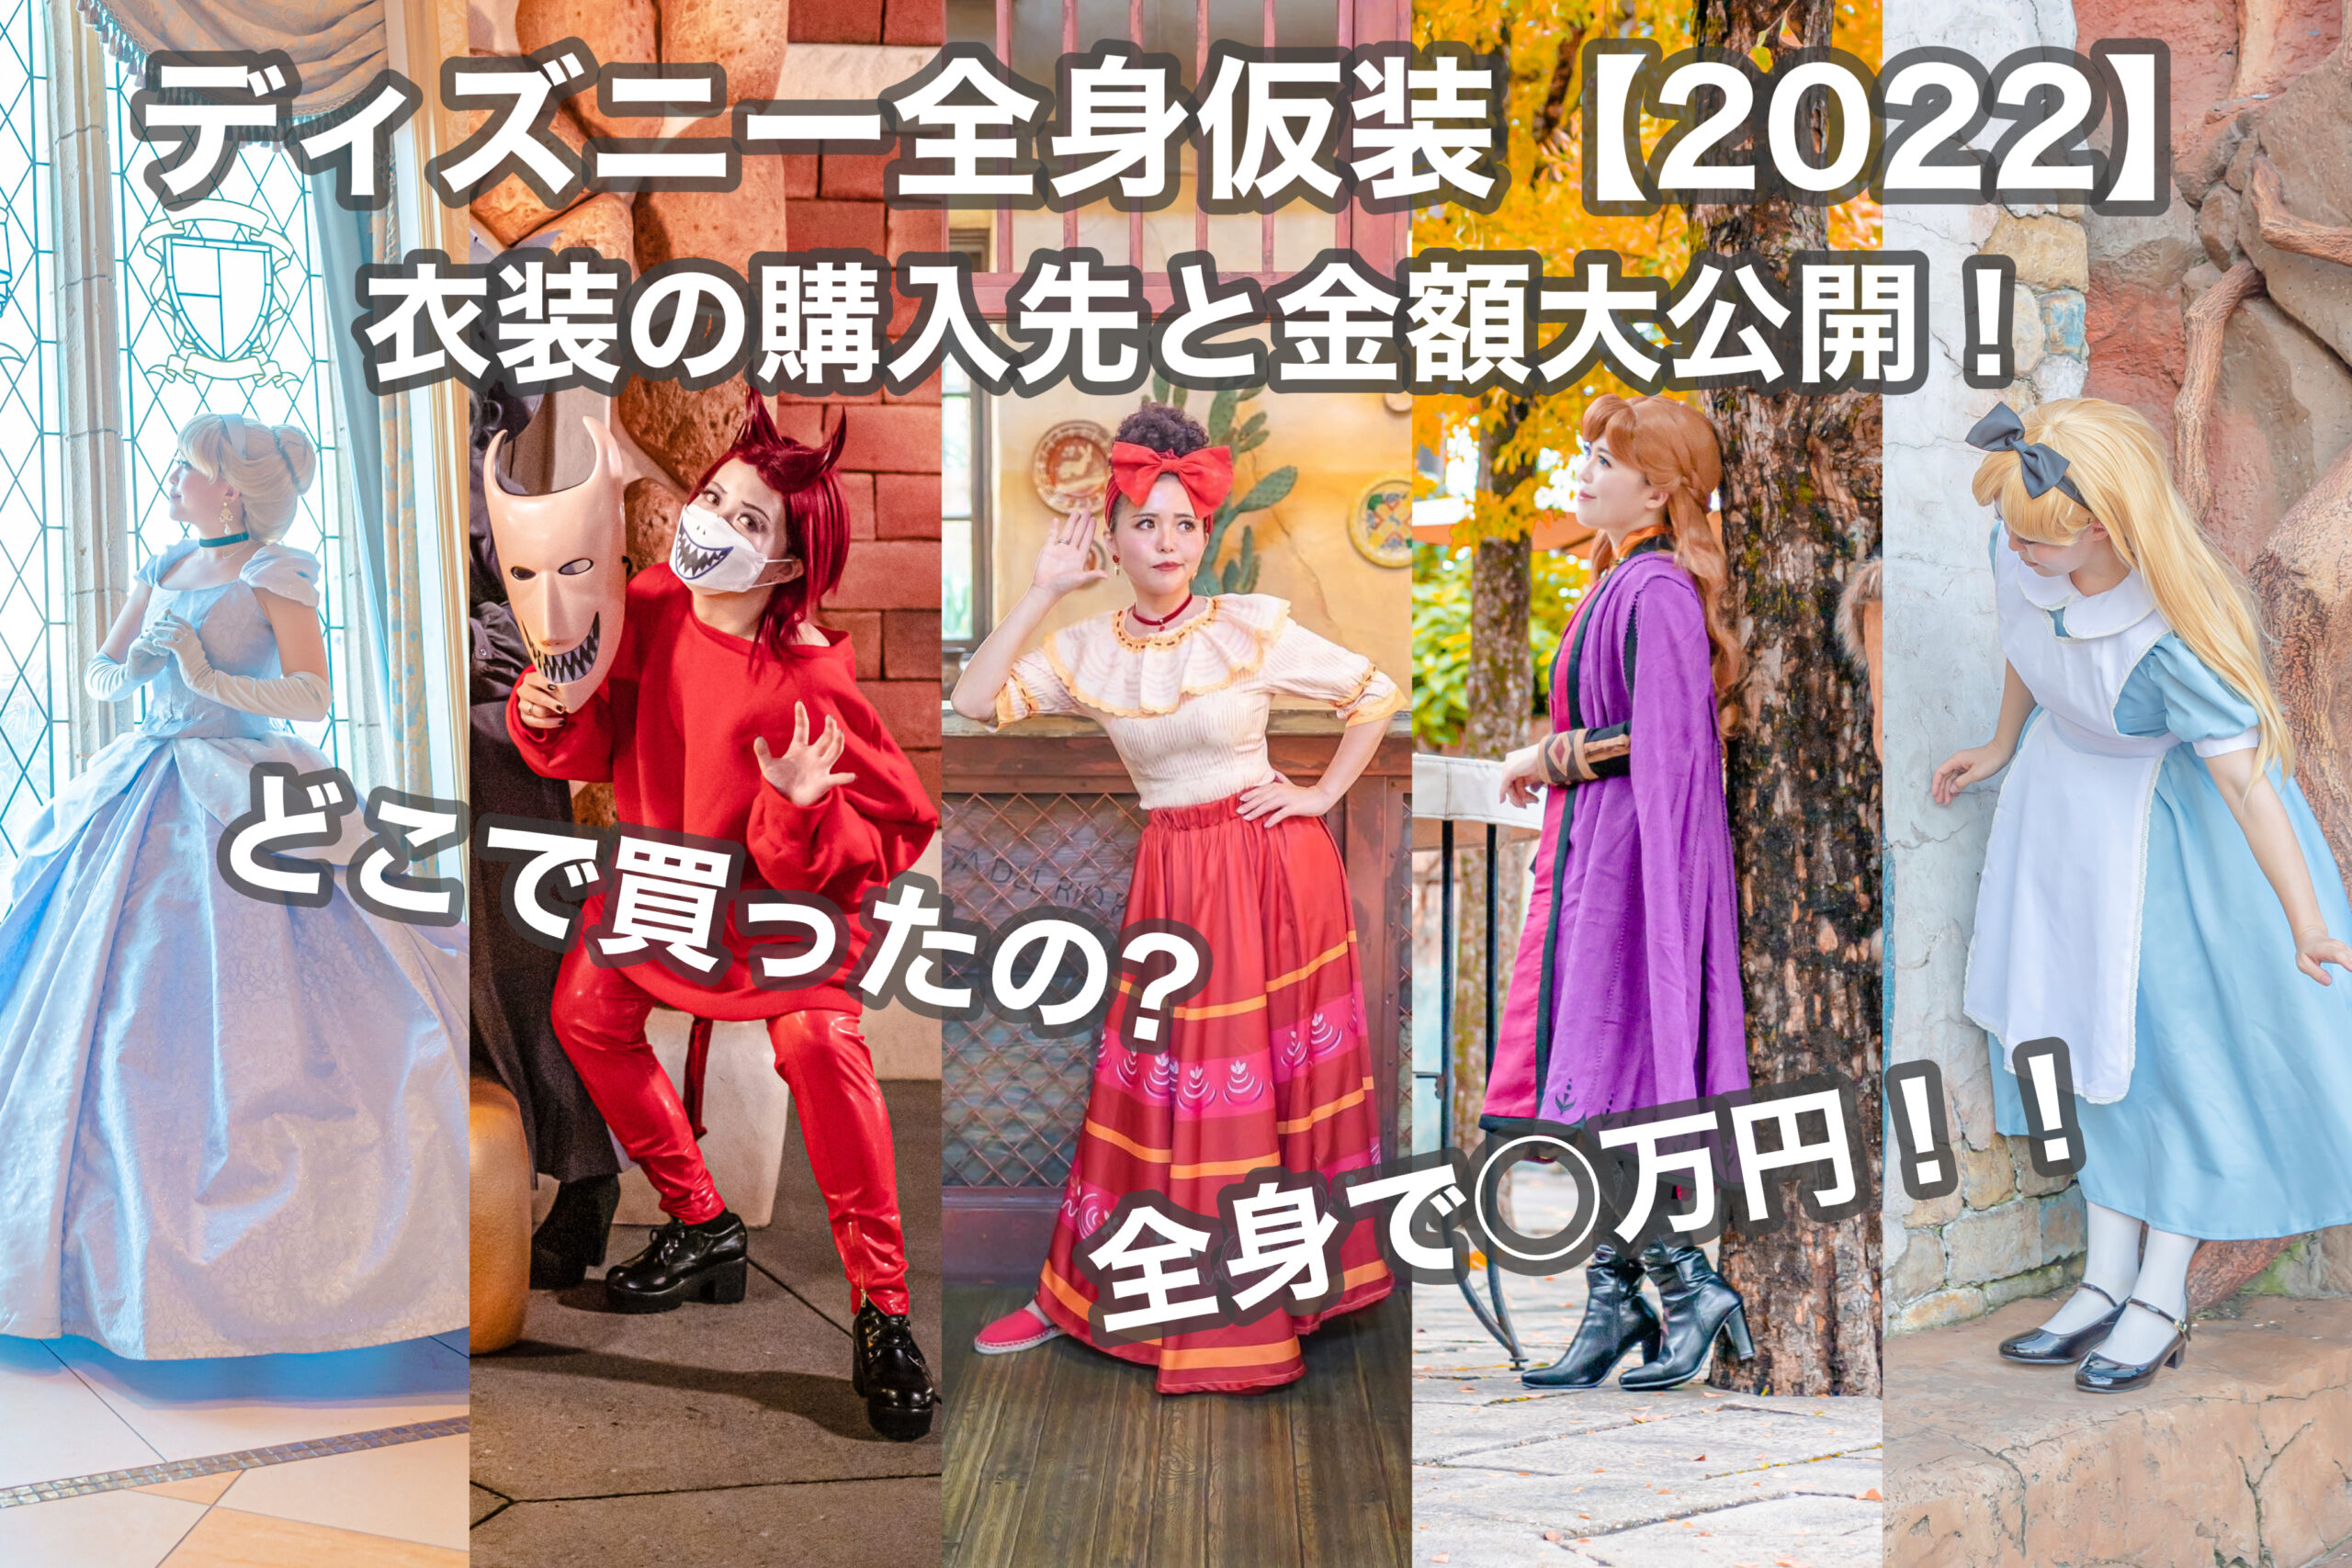 ディズニー全身仮装【2022】 衣装の購入先と金額大公開！ | Disney ...